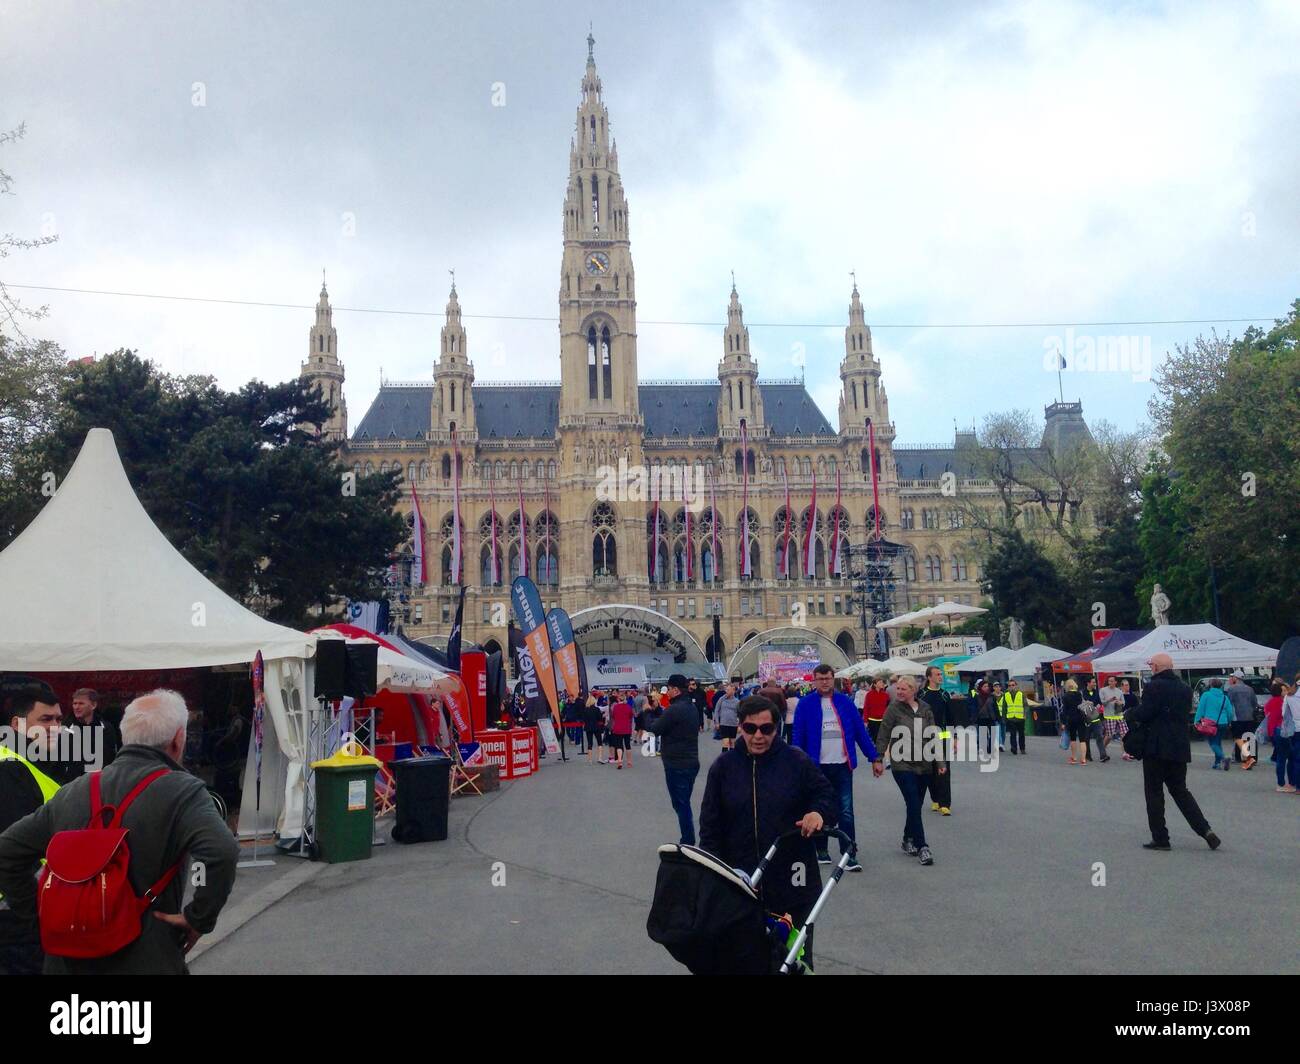 Viena, Austria, Escena en la calle, el edificio del ayuntamiento, la multitud de personas caminando en un evento deportivo, un maratón. Foto de stock